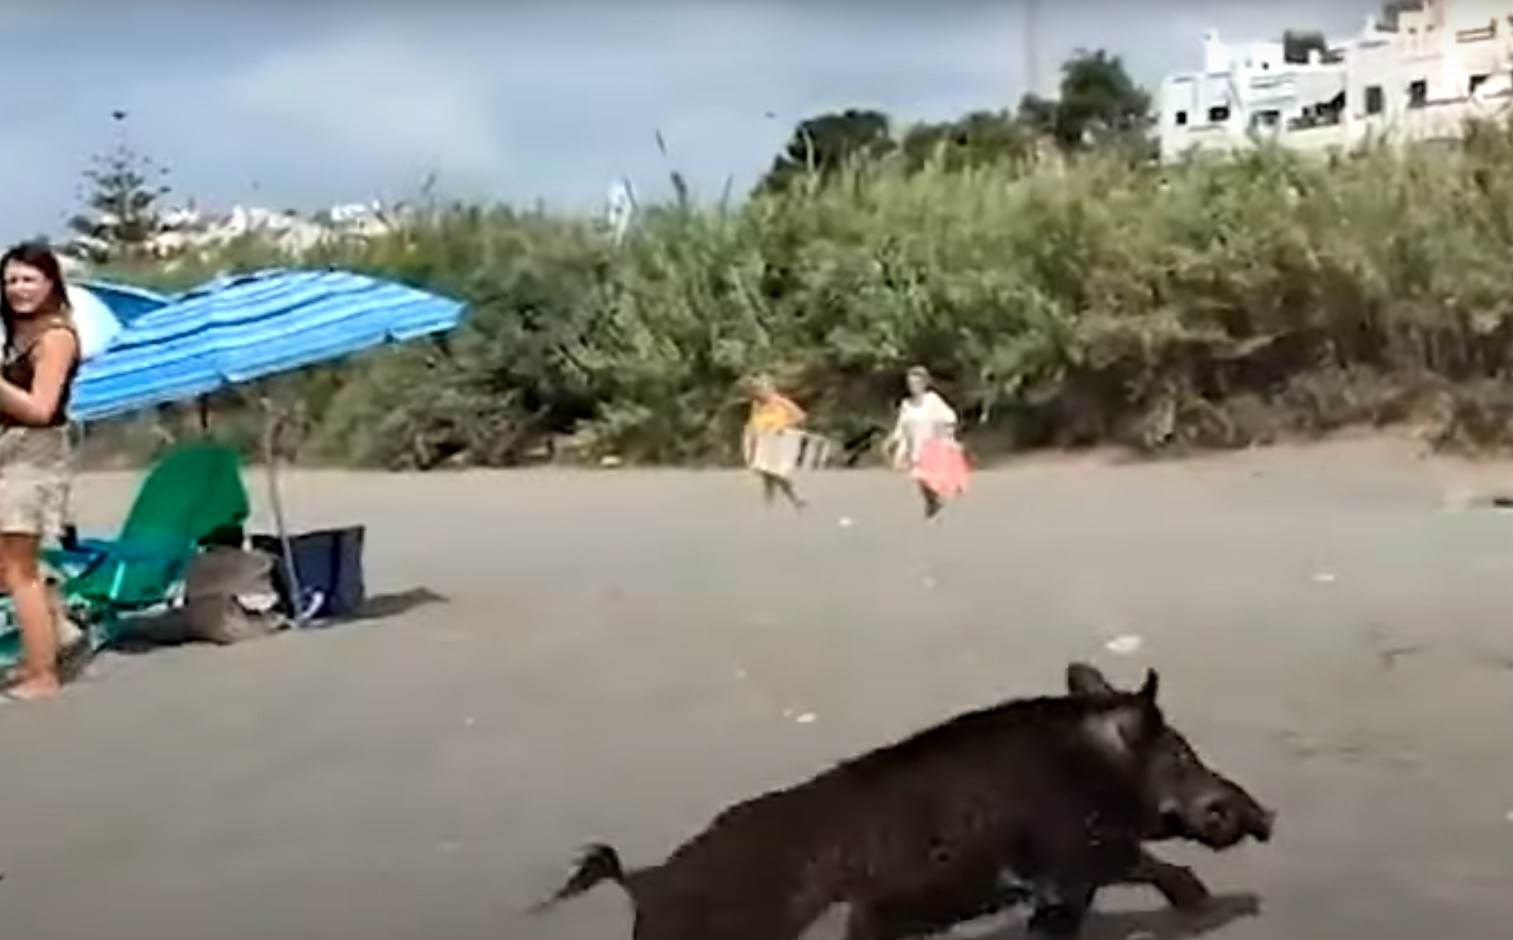  Divlja svinja uplašila je turiste u spaniji 